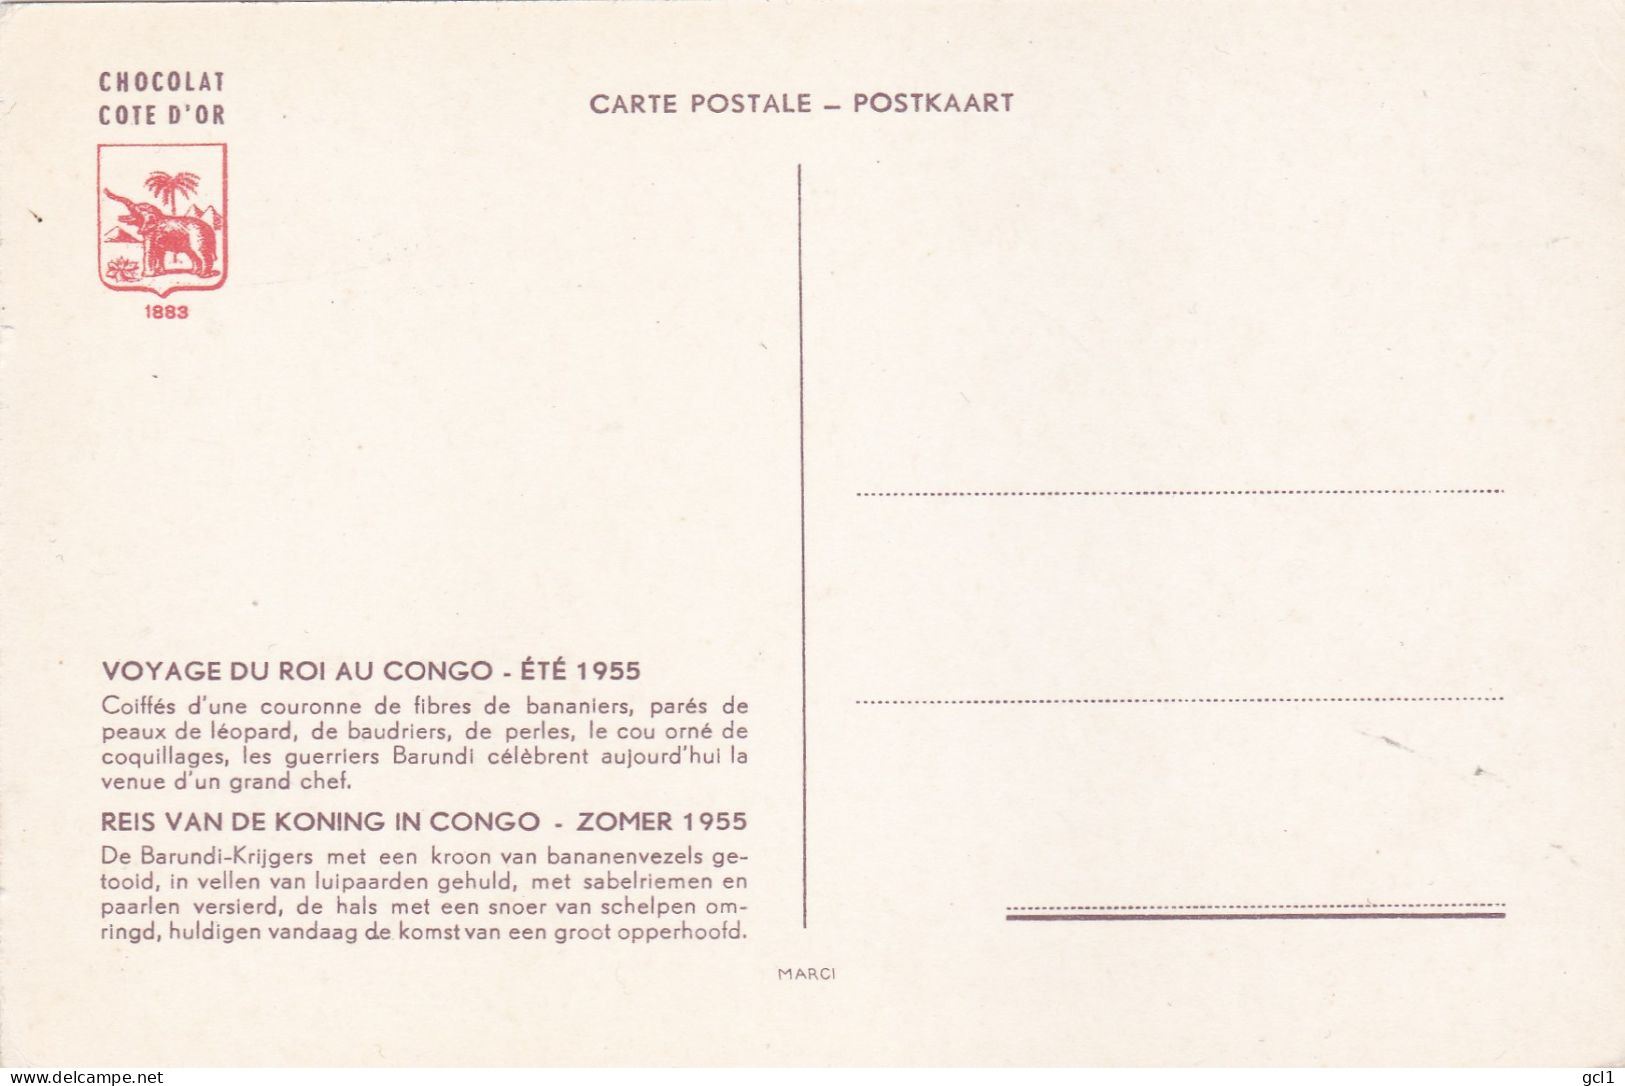 Reis Van De Koning In Congo -Zomer 1955 - 15 Stuks Van Cote D' Or Chocolade - Verzamelingen & Kavels